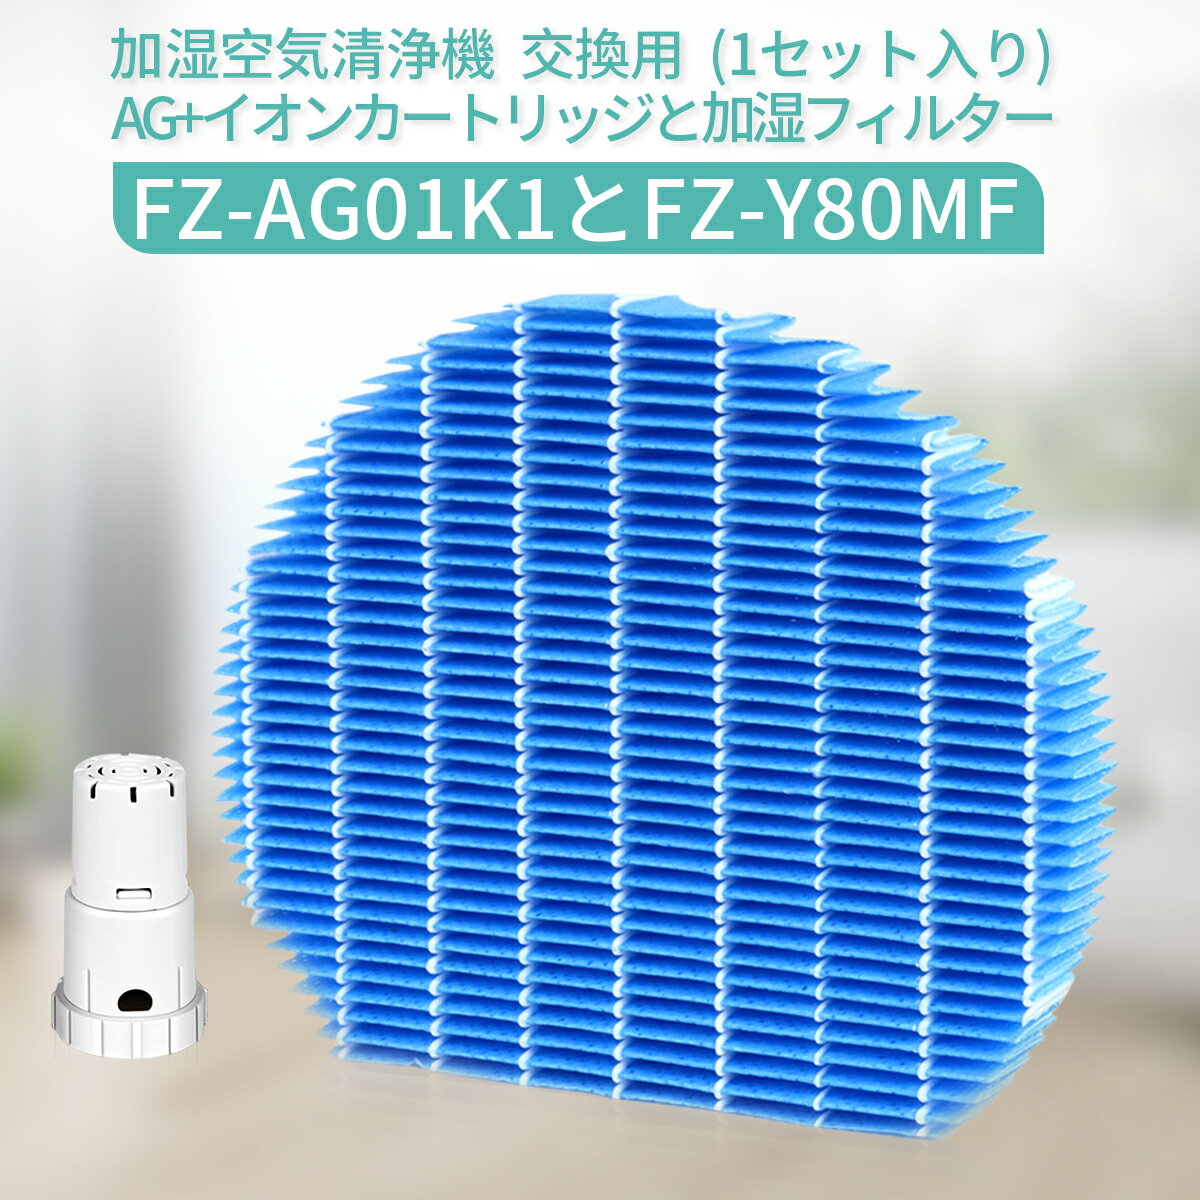 空気清浄機用アクセサリー, 交換フィルター  FZ-Y80MF Ag FZ-AG01K1 fz-y80mf fz-ag01k1 (1)